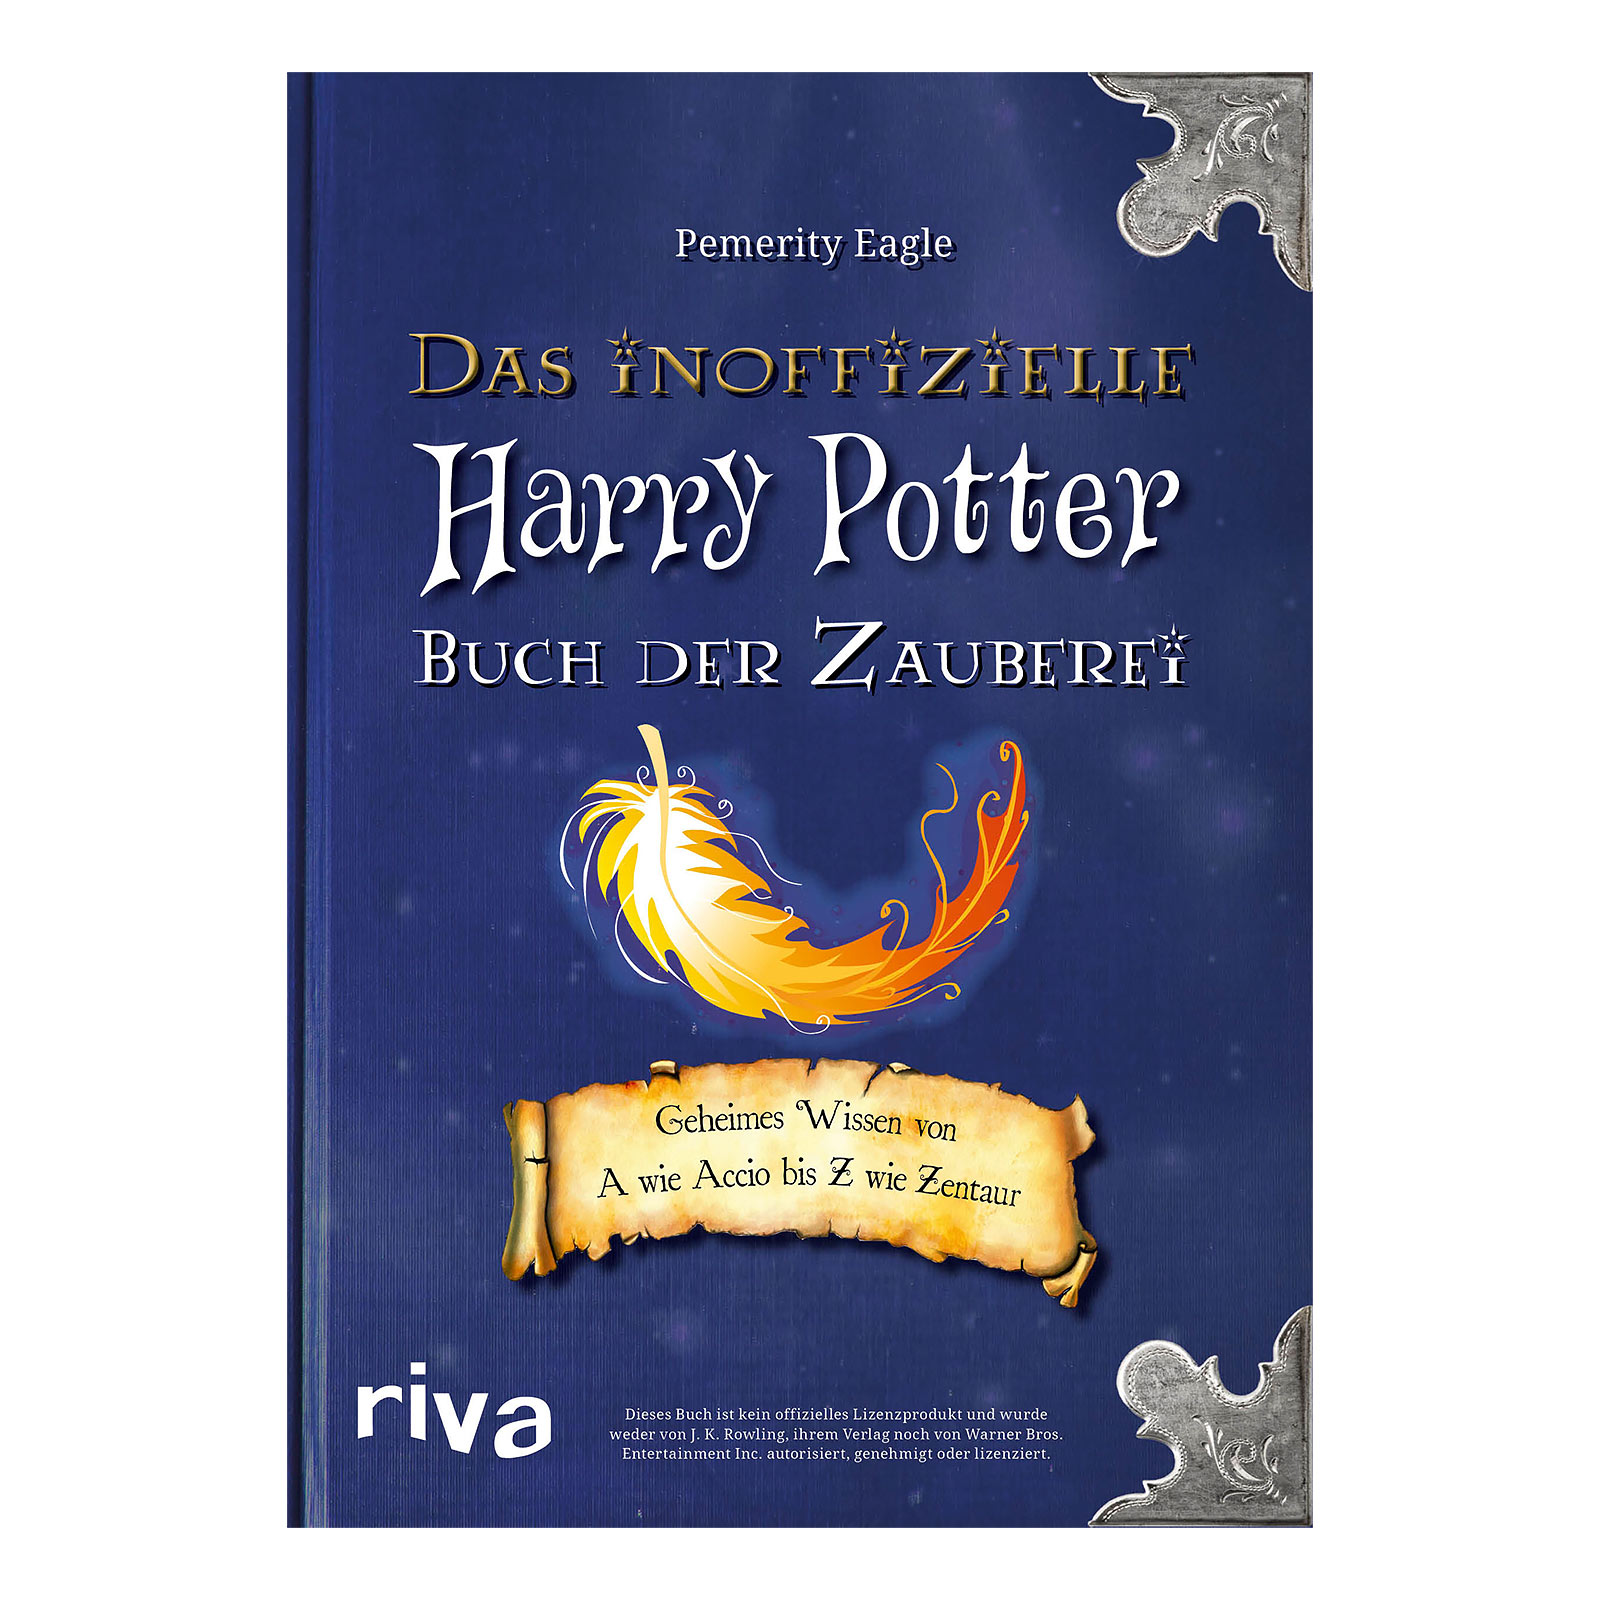 Harry Potter - Het onofficiële boek van de tovenarij